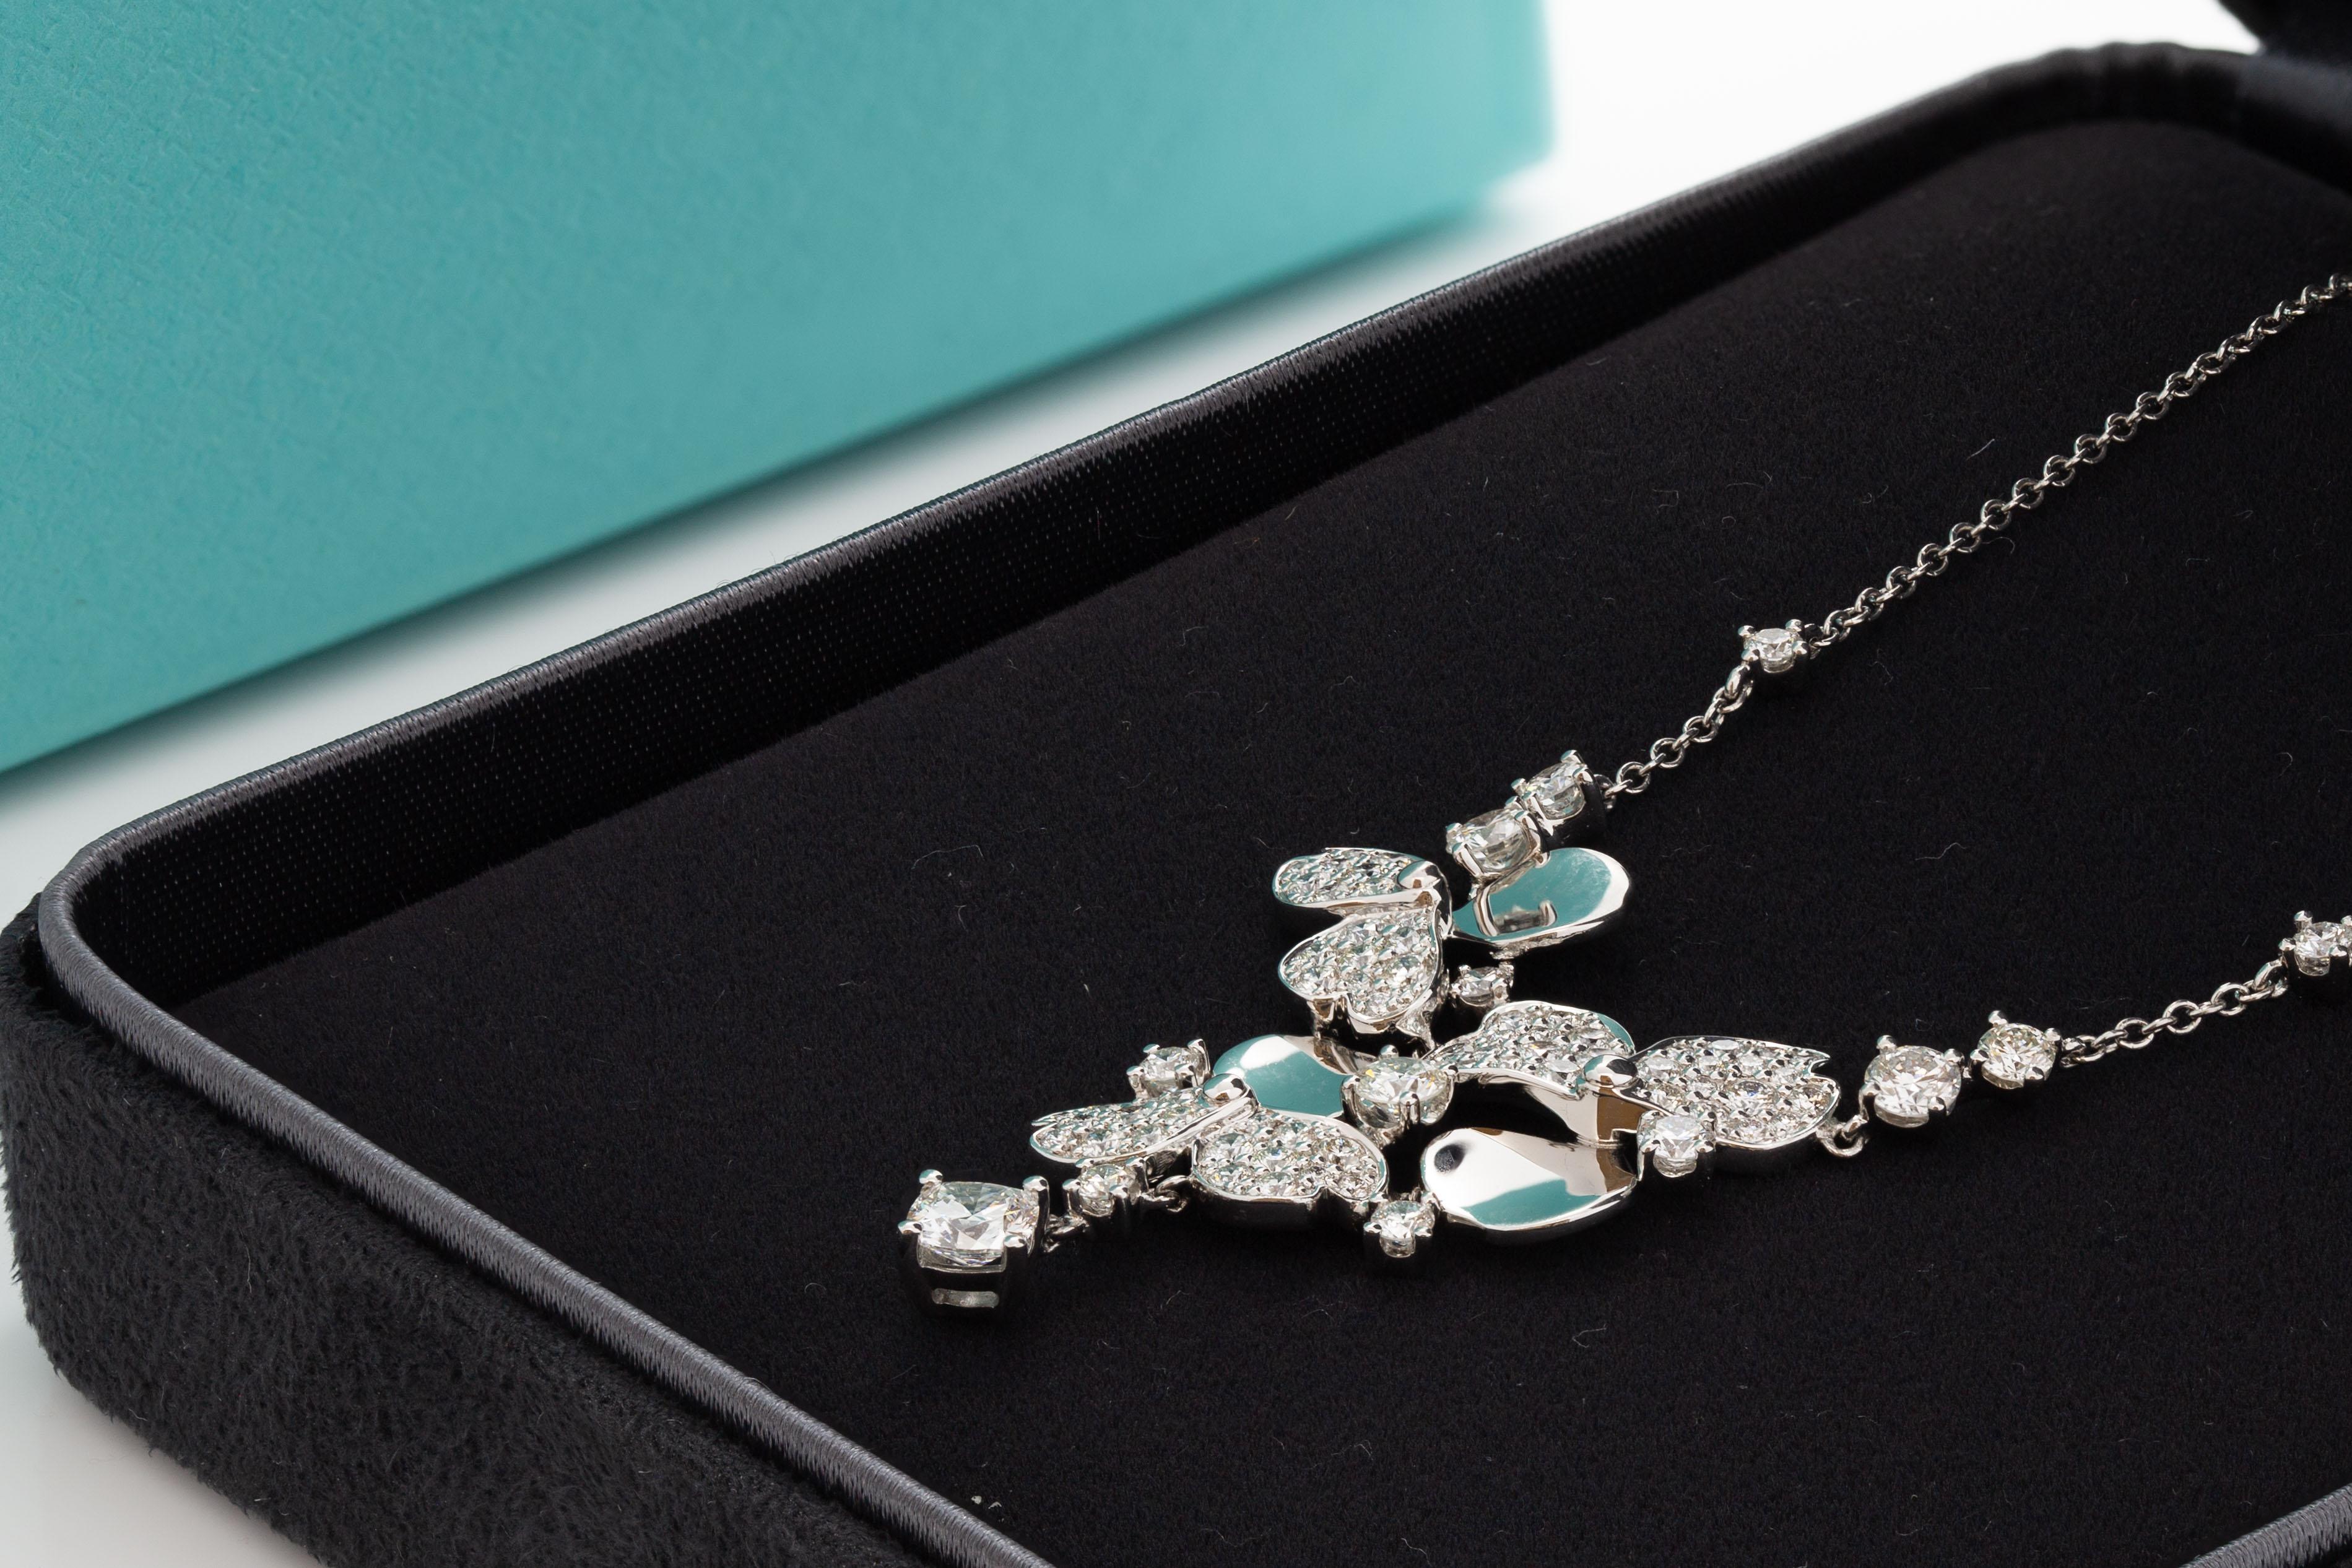 Tiffany & Co. Collier de fleurs en papier en diamant de platine.

Poids total en carats du diamant : 1,40 ct.

Une centaine de pierres

Longueur totale ~18inches (la chaîne est 16